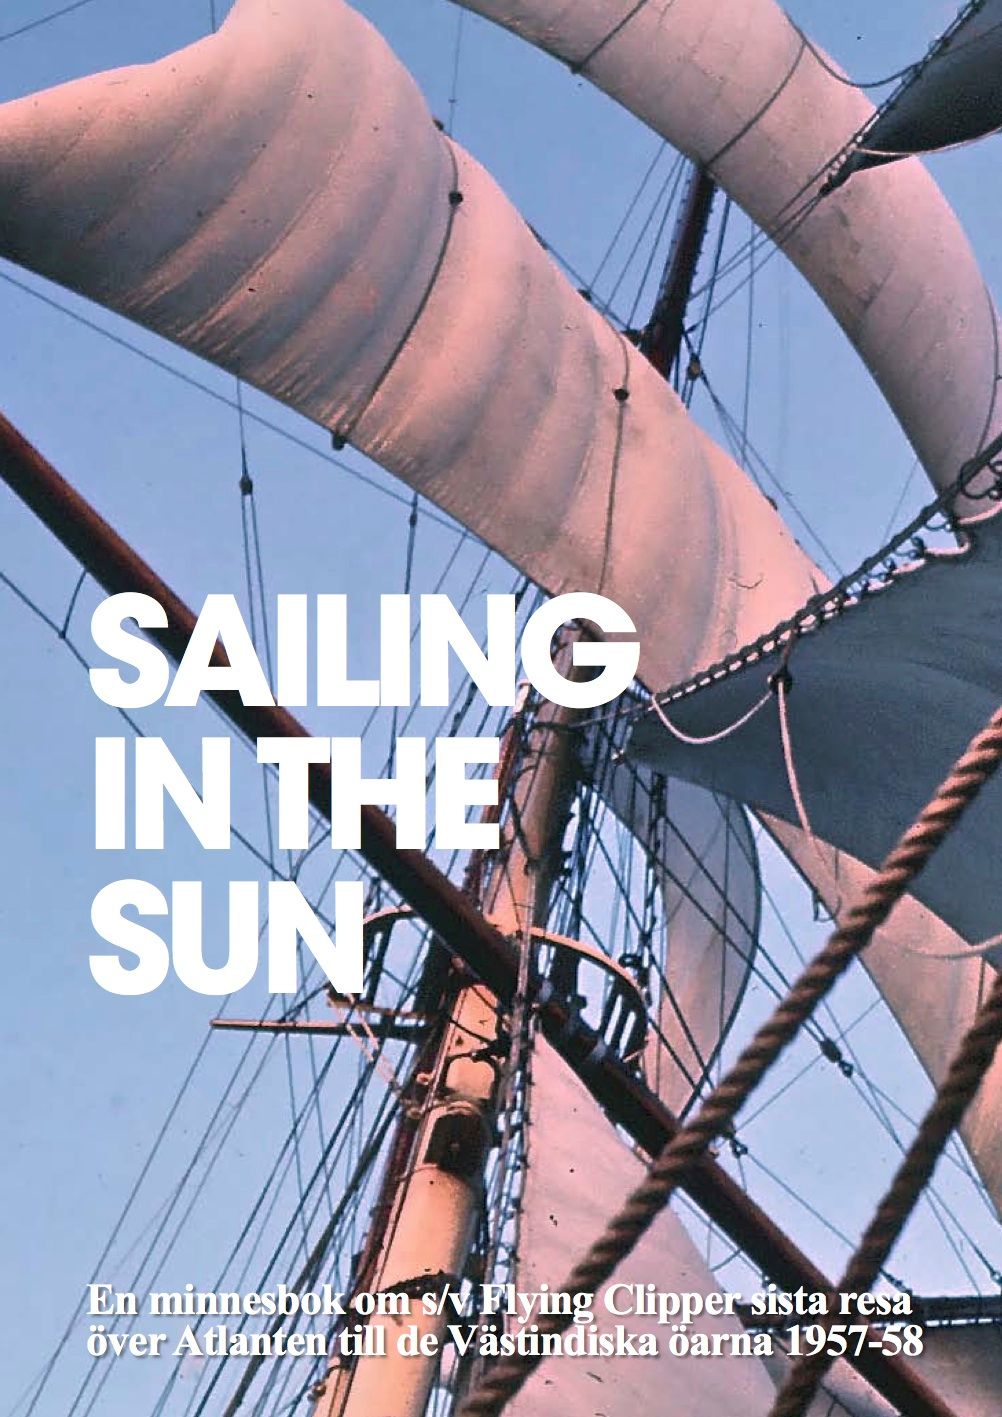 Sailing in the Sun, e-bok av Lars Dahllöf, Lasse Genberg